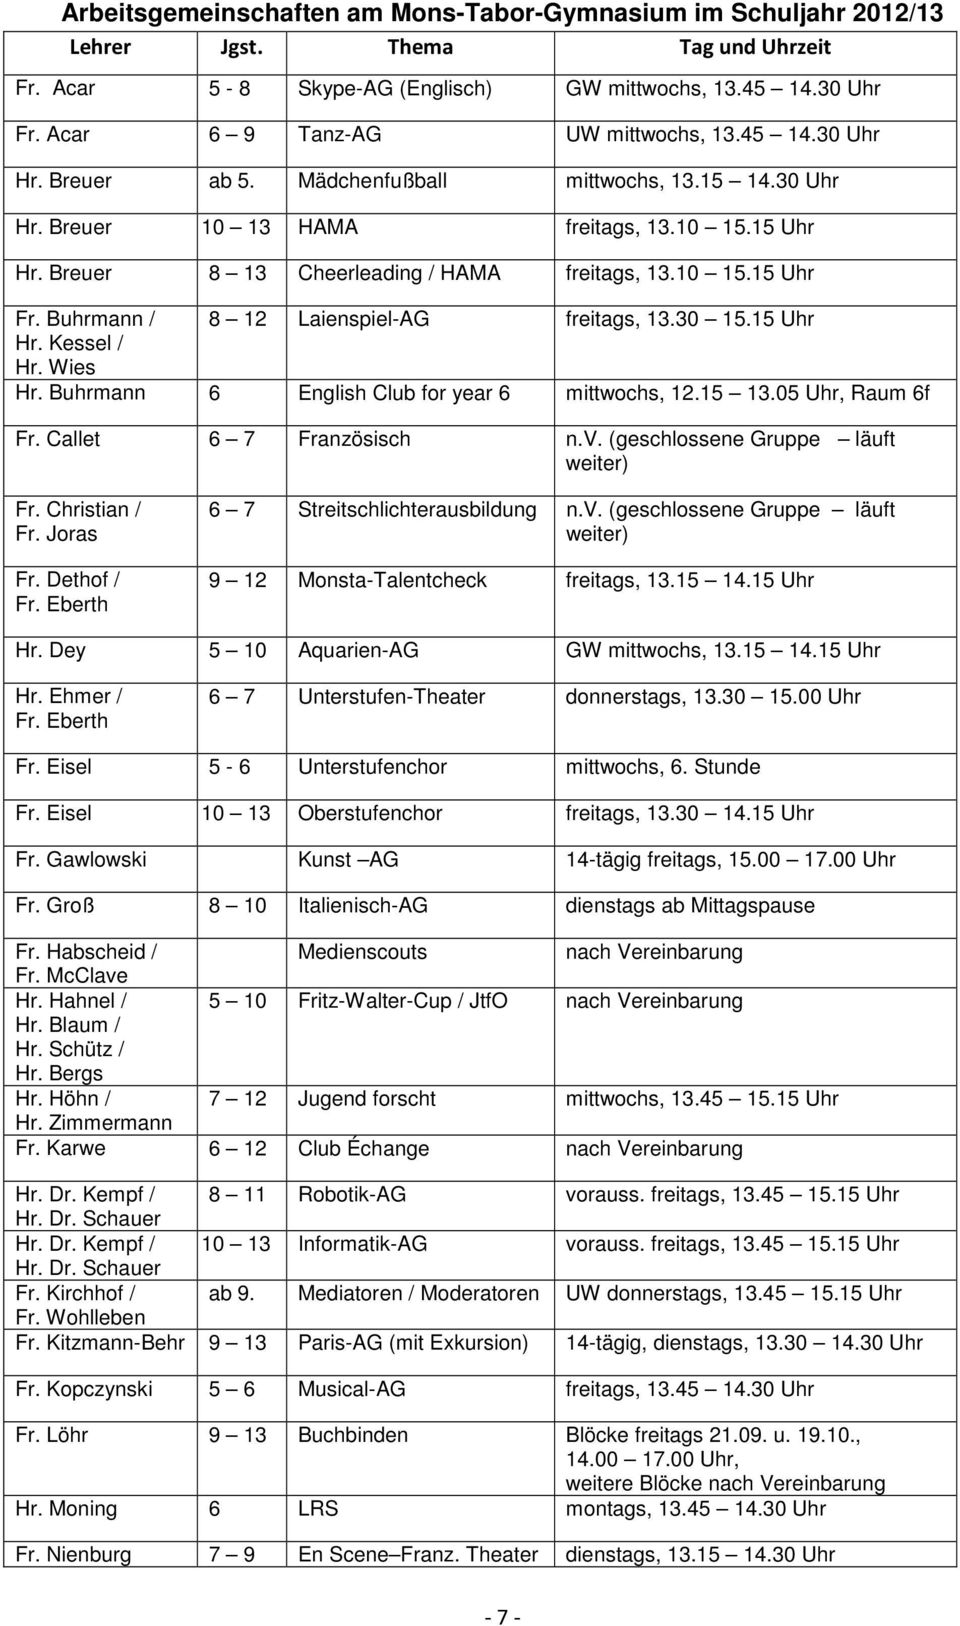 Breuer 8 13 Cheerleading / HAMA freitags, 13.10 15.15 Uhr Fr. Buhrmann / 8 12 Laienspiel-AG freitags, 13.30 15.15 Uhr Hr. Kessel / Hr. Wies Hr. Buhrmann 6 English Club for year 6 mittwochs, 12.15 13.